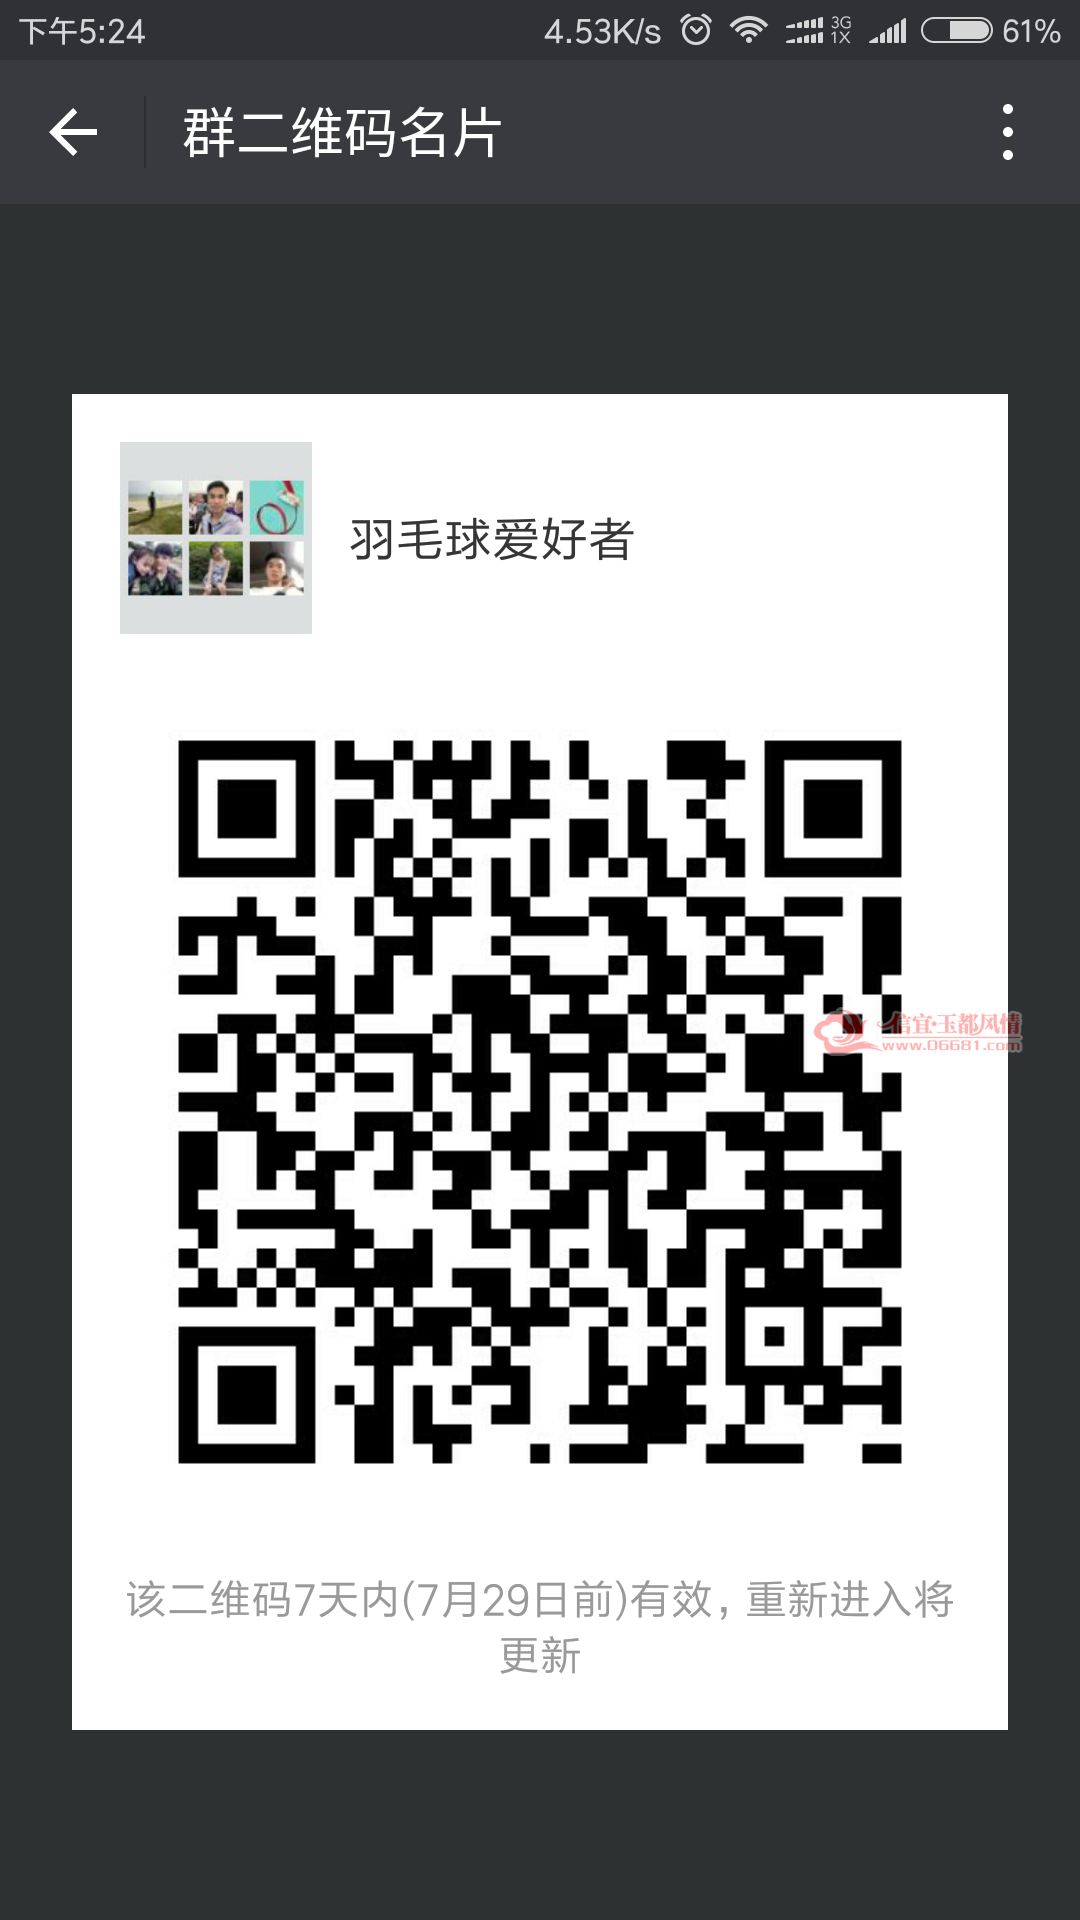 Screenshot_2017-07-22-17-24-11-924_com.tencent.mm.png